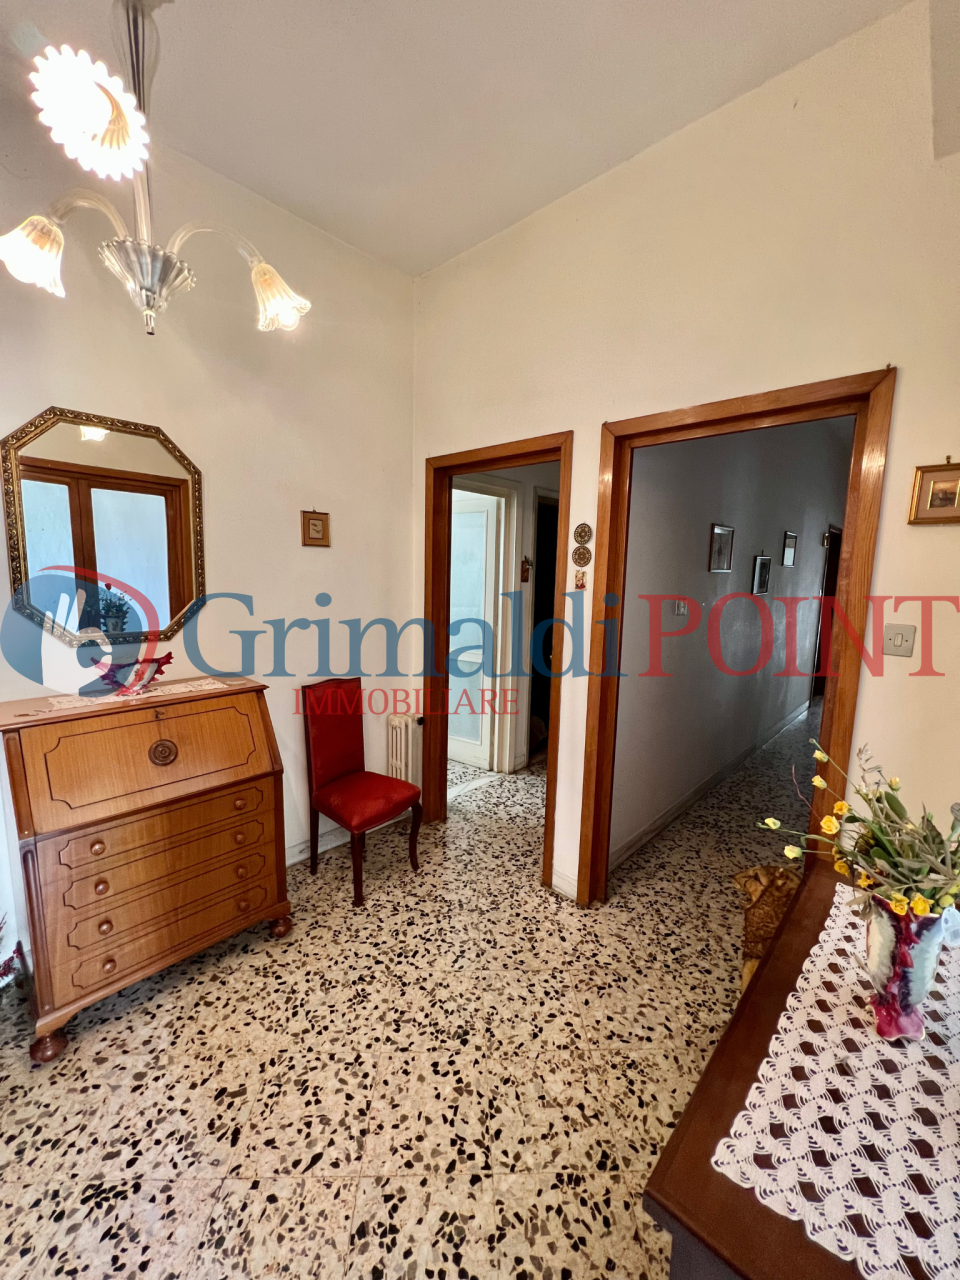 Appartamento in vendita a Lecce, 7 locali, prezzo € 150.000 | PortaleAgenzieImmobiliari.it